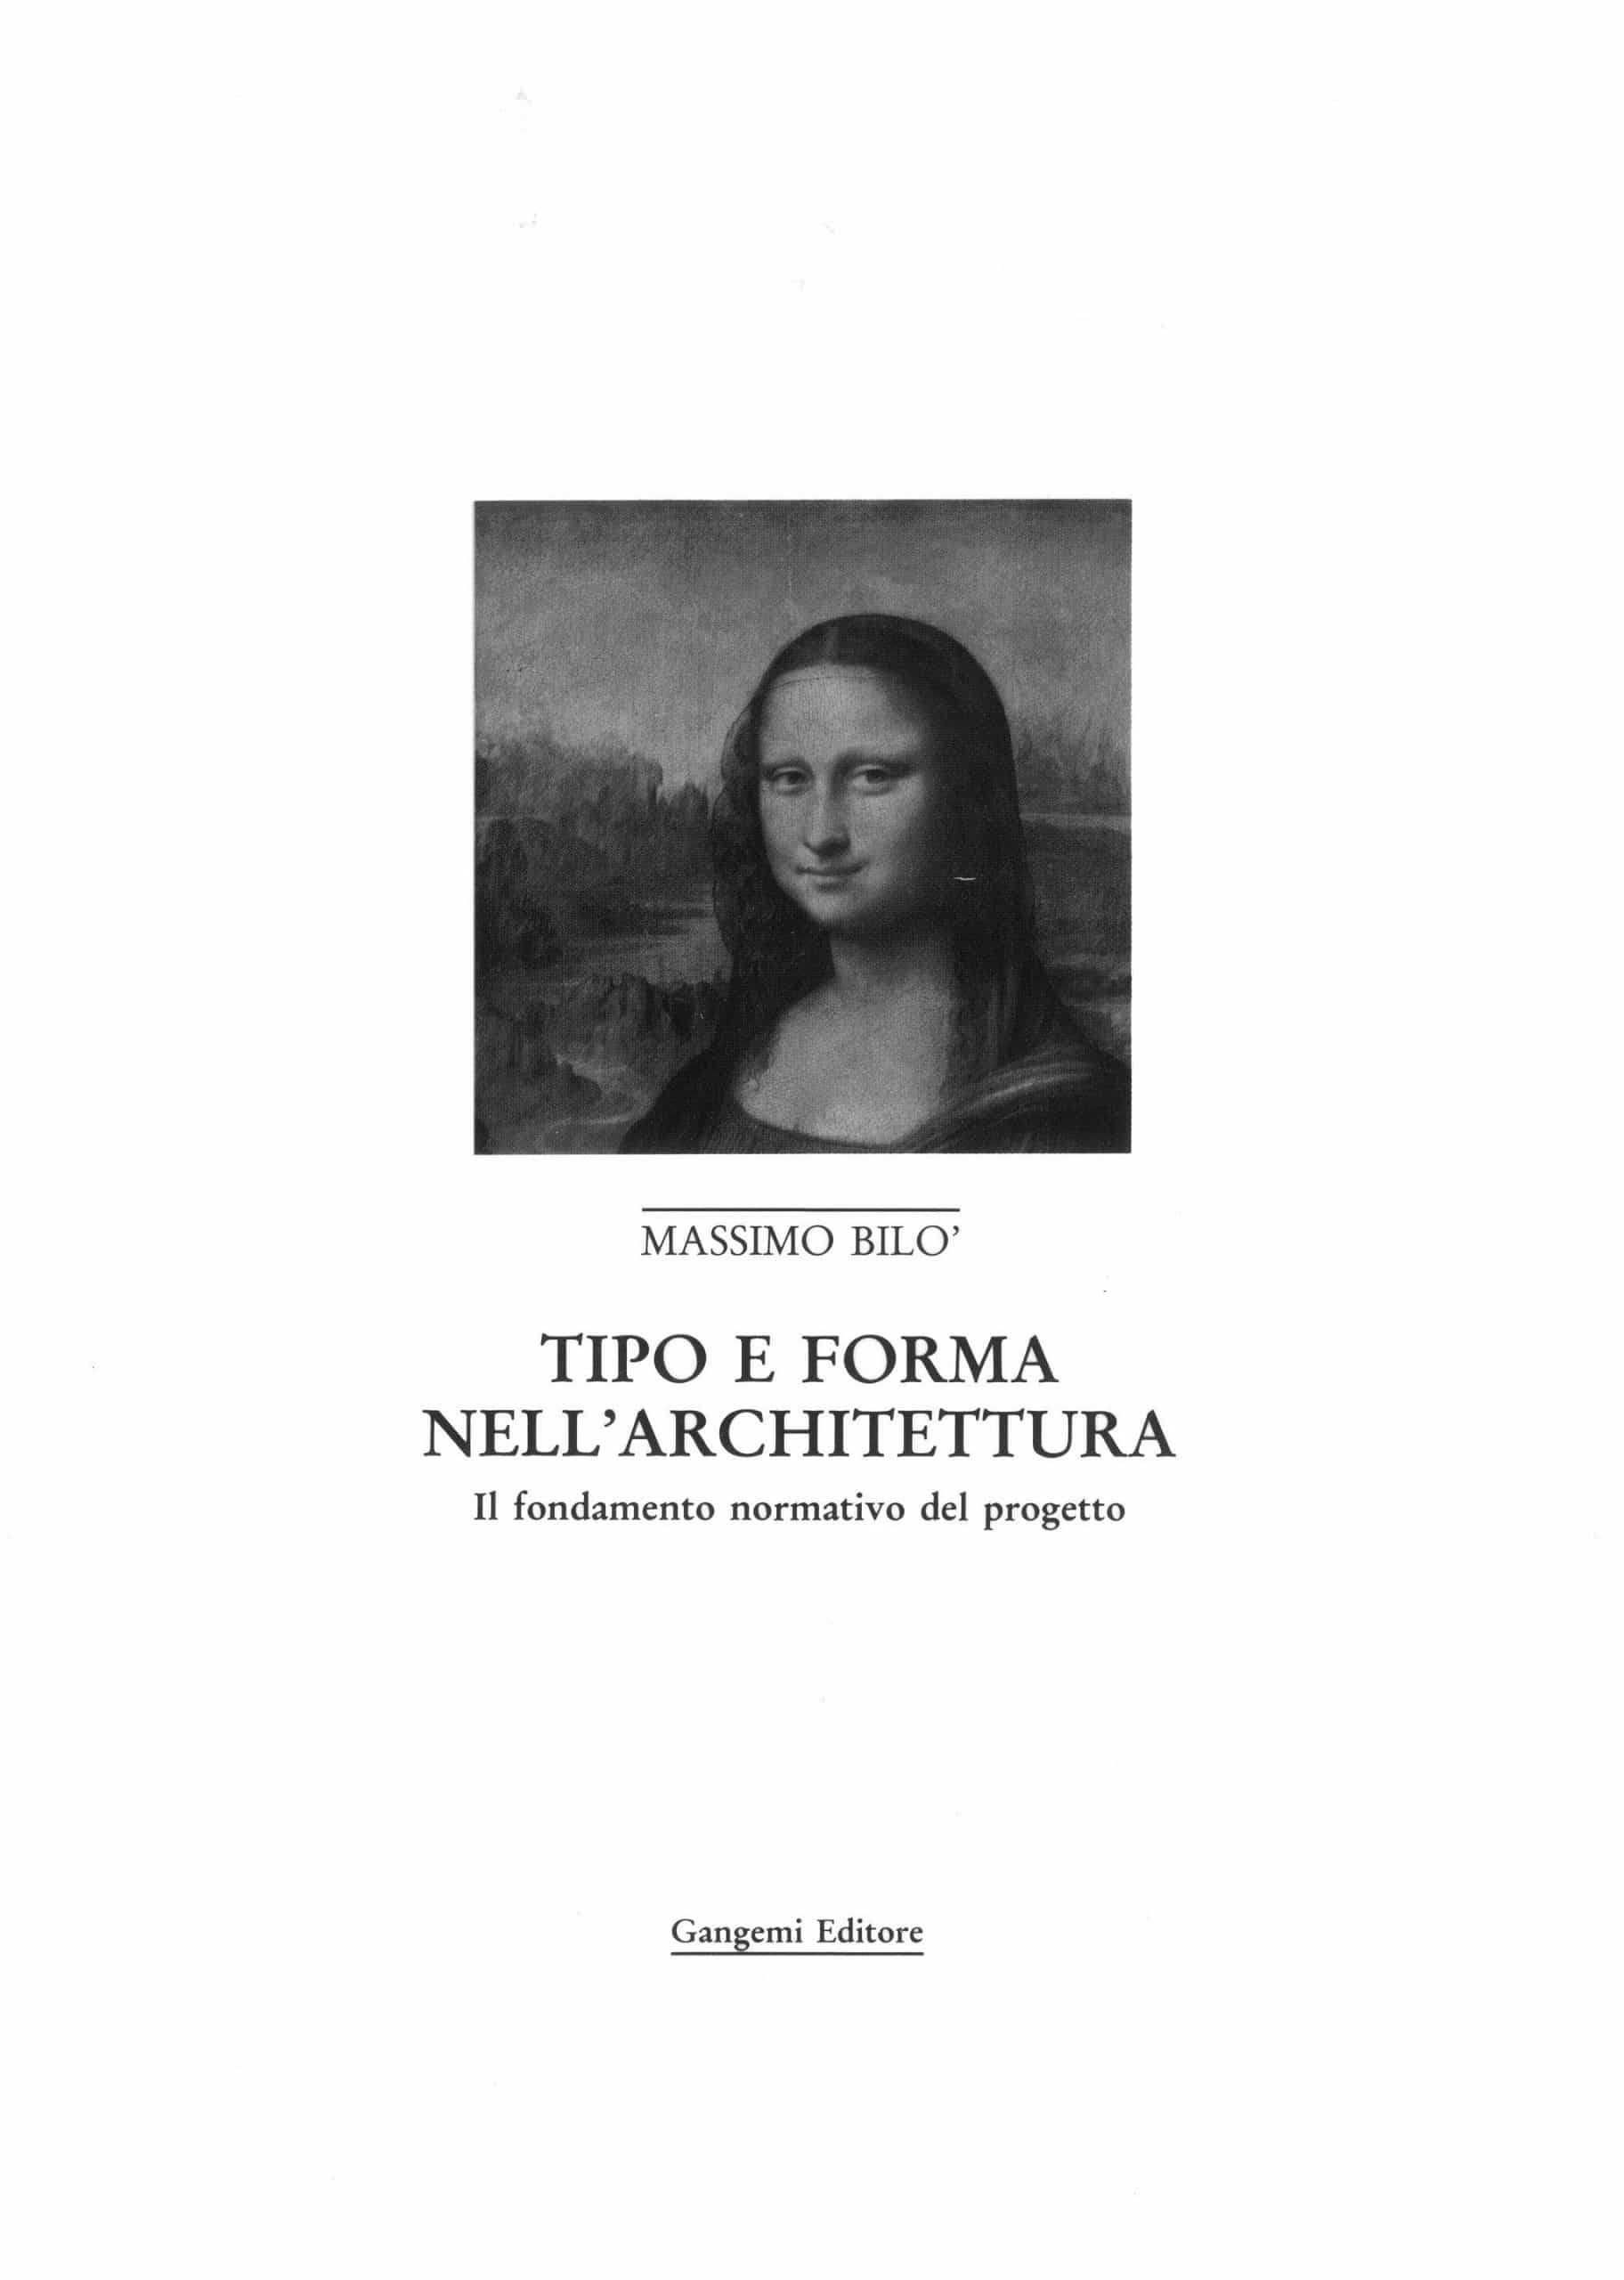 1 - Tipo e forma nell’architettura. Il fondamento normativo del progetto, Gangemi Editore, Roma 1989, Copertina